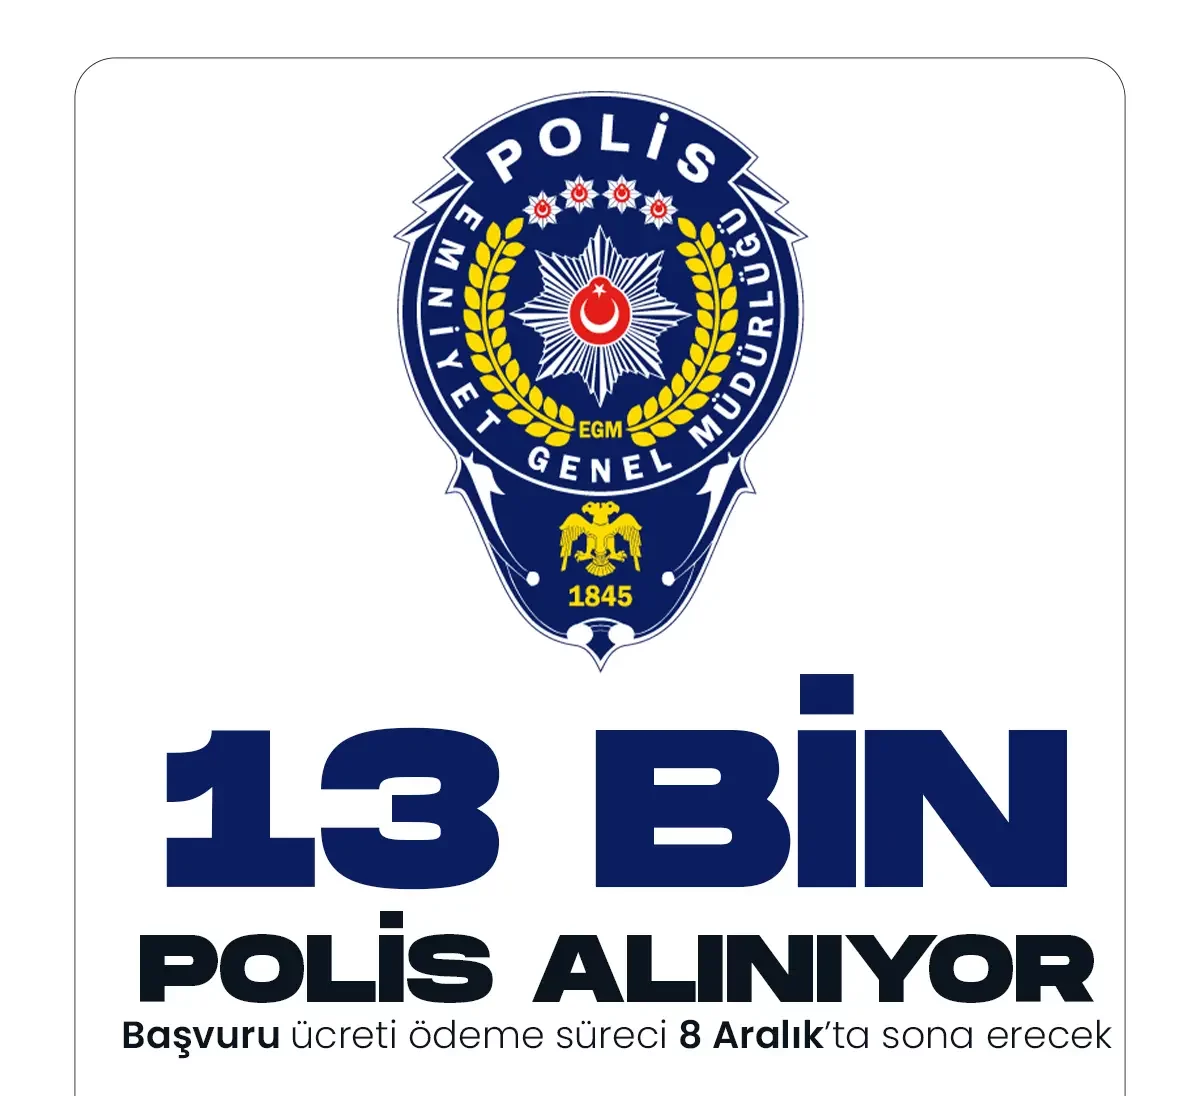 13 bin polis alımı